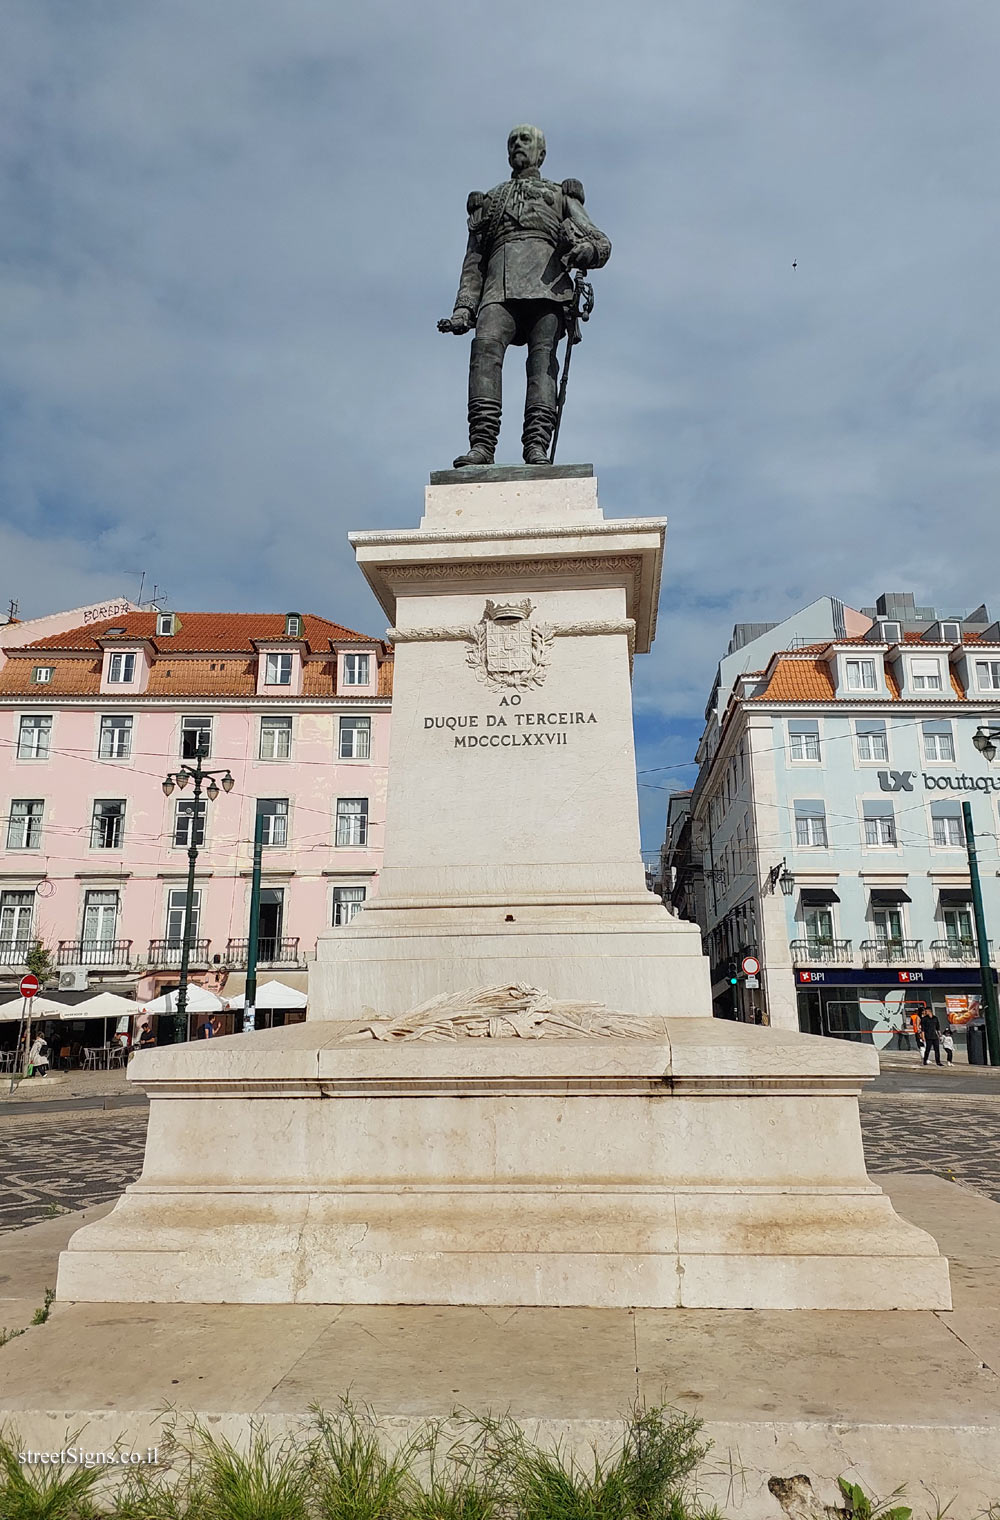 Lisbon - The Duke of Terceira statue - Portugal, Praça Duque da Terceira 1 4, 1200-161 Lisboa, Portugal